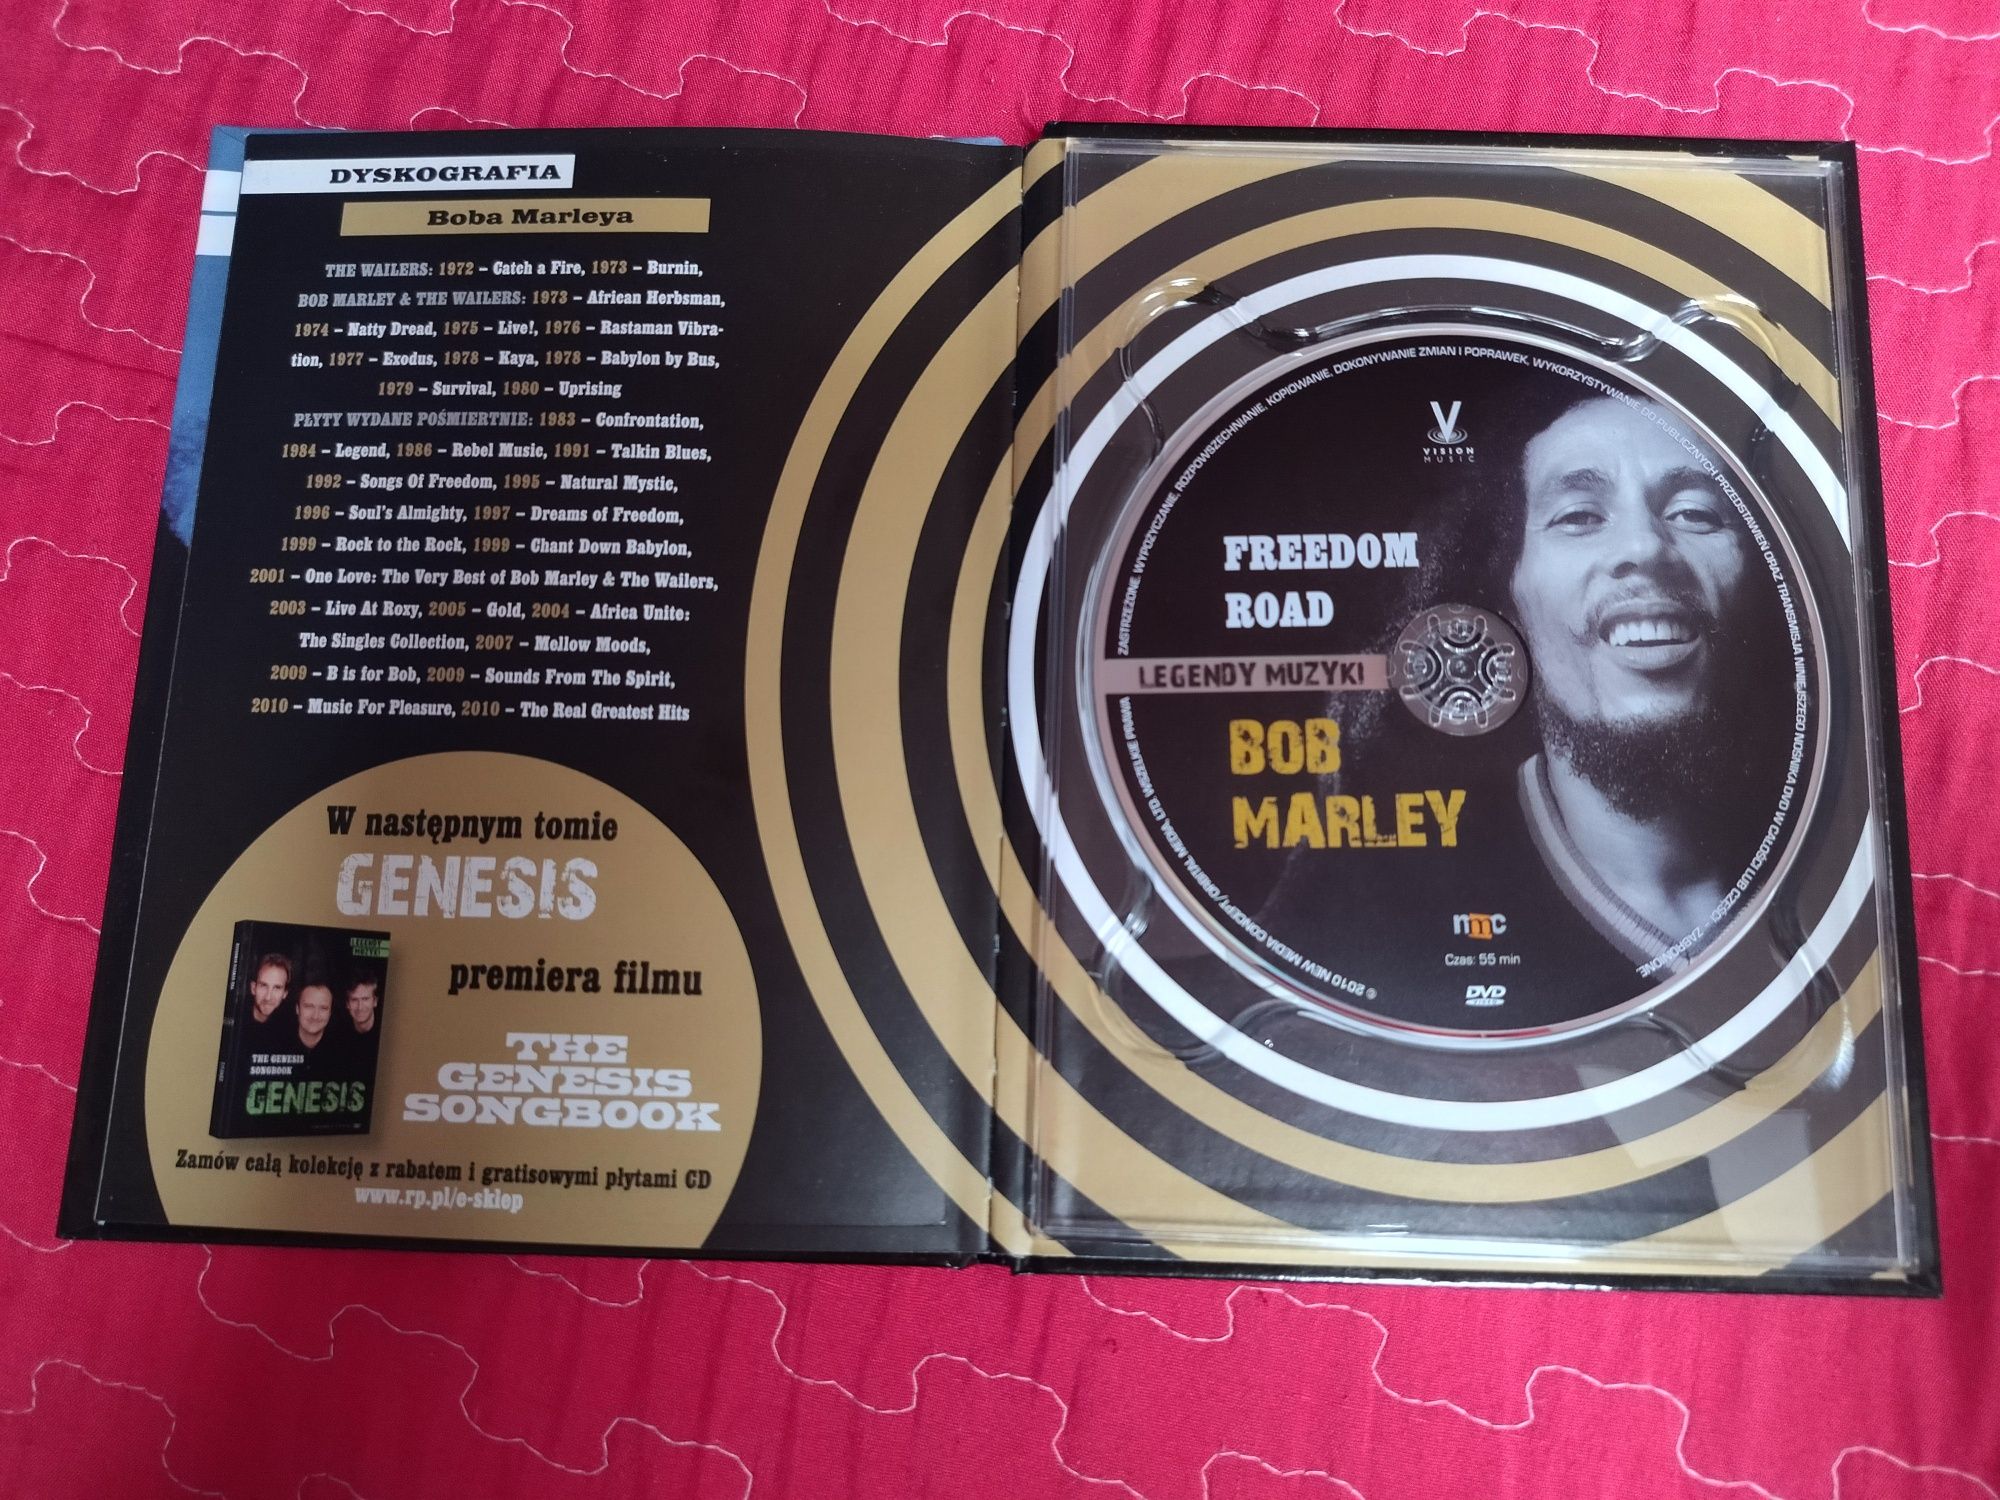 Bob Marley - Freedom road